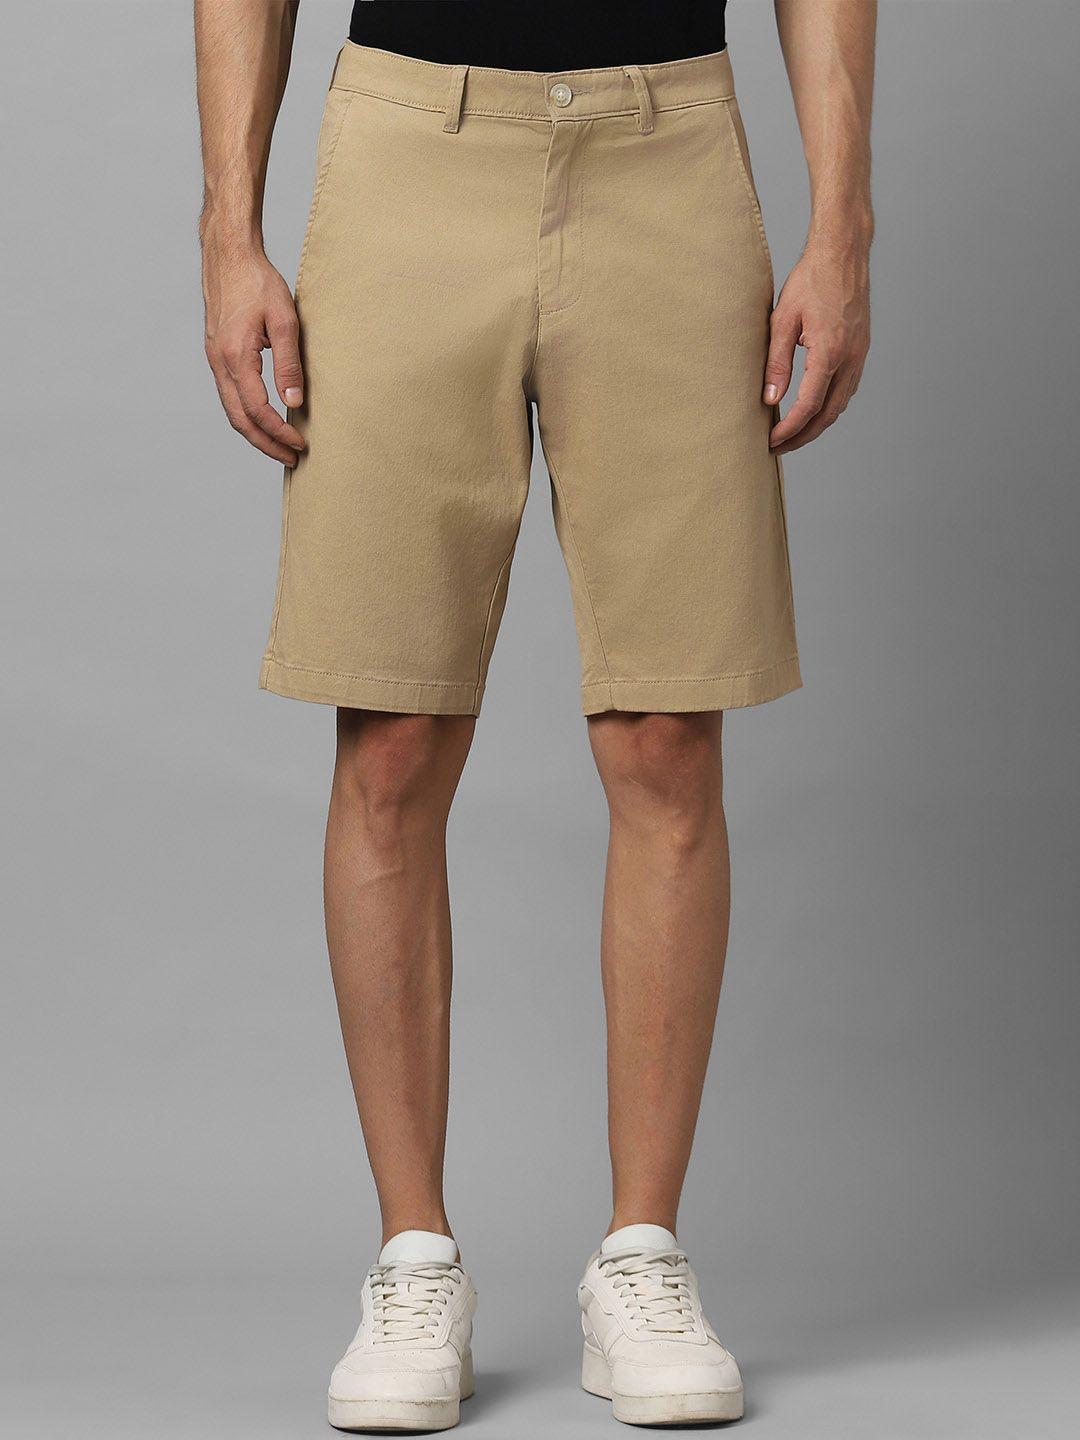 allen solly men slim fit mid-rise pure cotton shorts